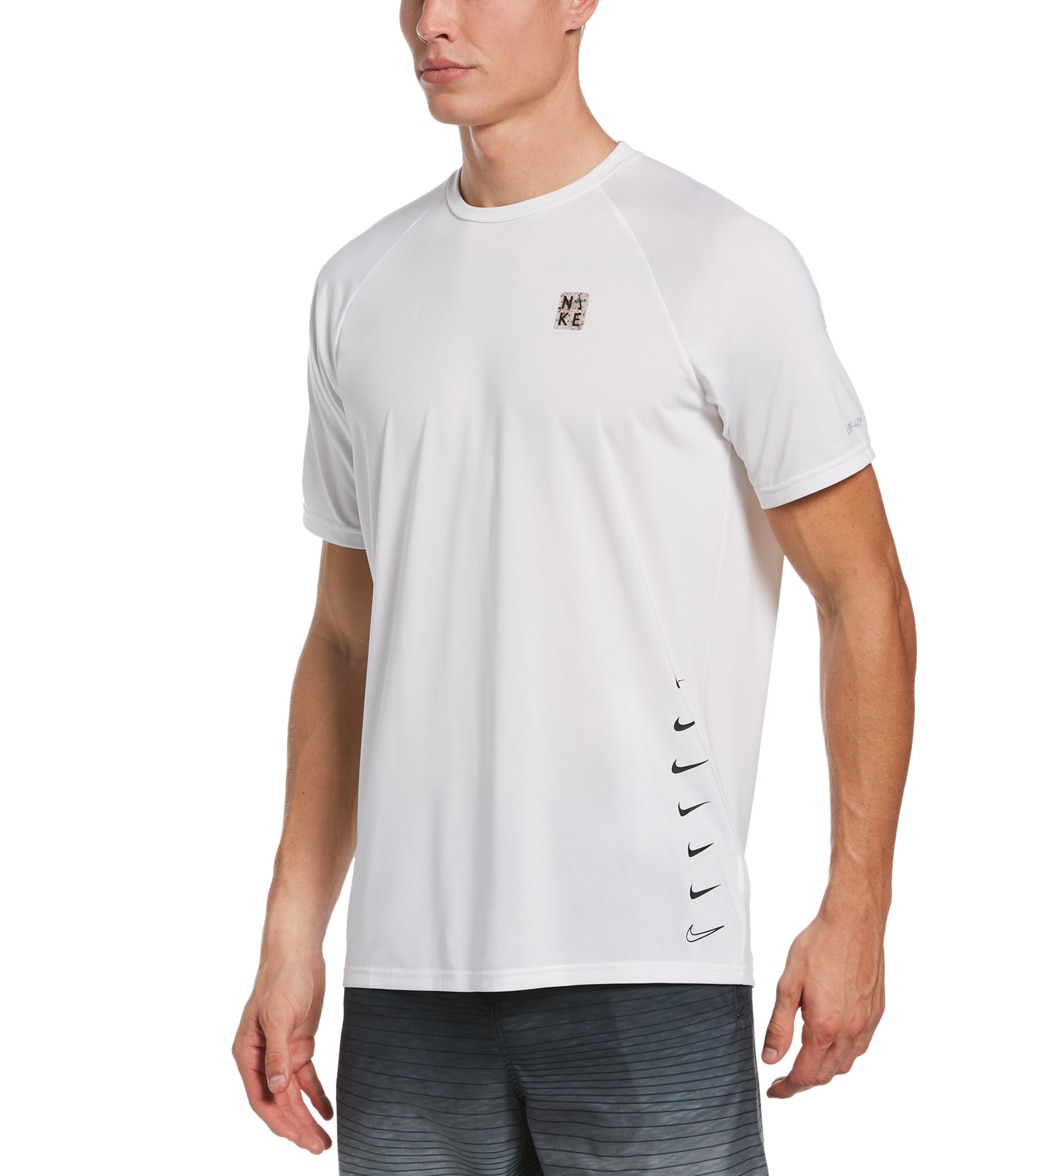 Nike Men's Multi Swoosh Short Sleeve Hydro Rashguard Shirt - White Medium - Swimoutlet.com